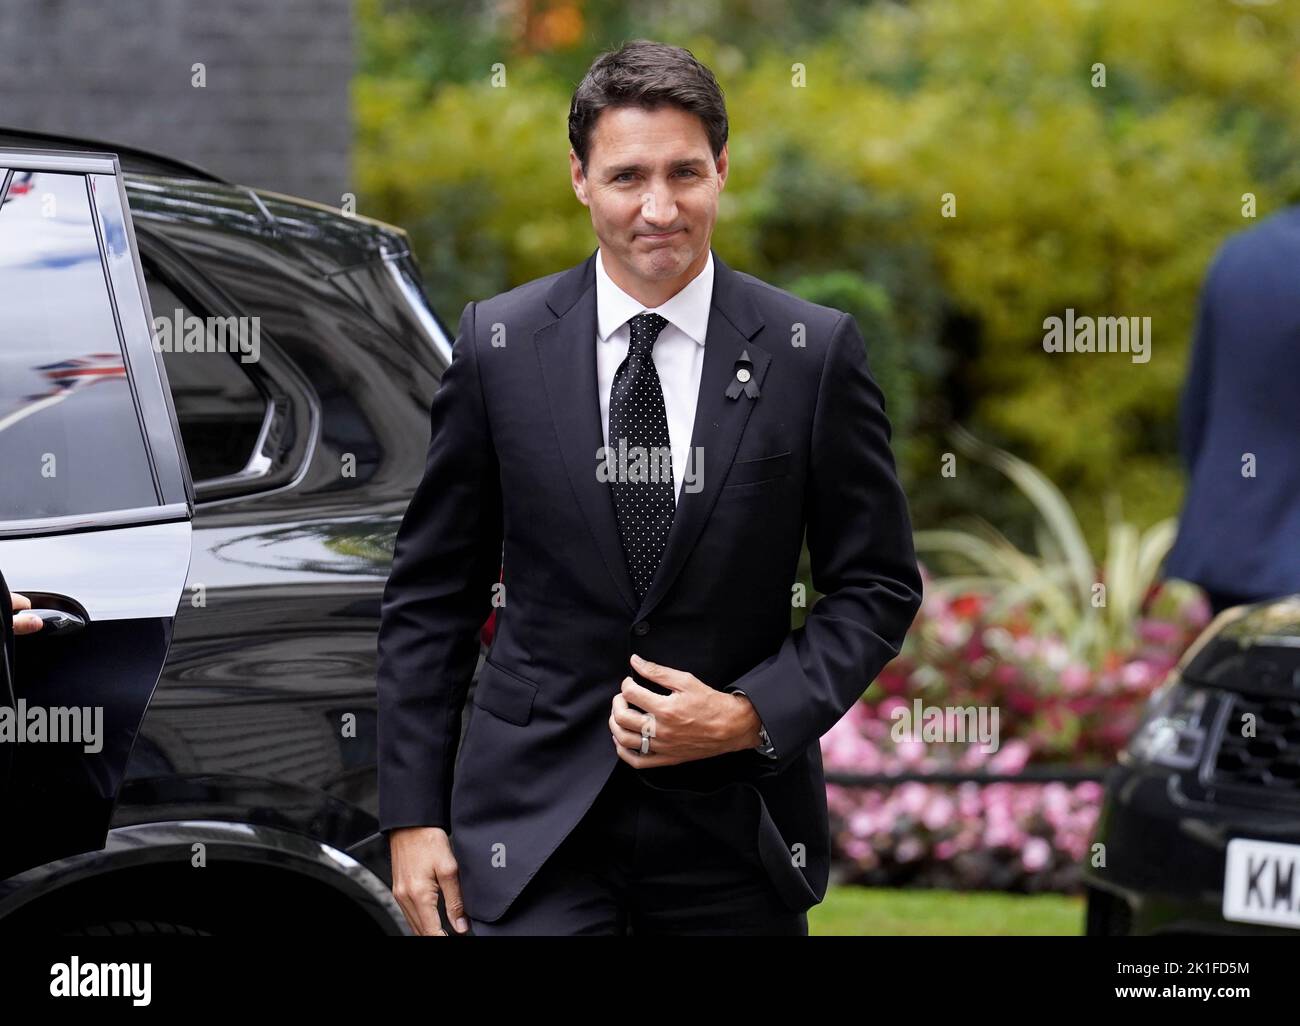 El Primer Ministro de Canadá, Justin Trudeau, llega al 10 de Downing Street en Londres, para una reunión bilateral con el Primer Ministro Liz Truss. Fecha de la foto: Domingo 18 de septiembre de 2022. Foto de stock